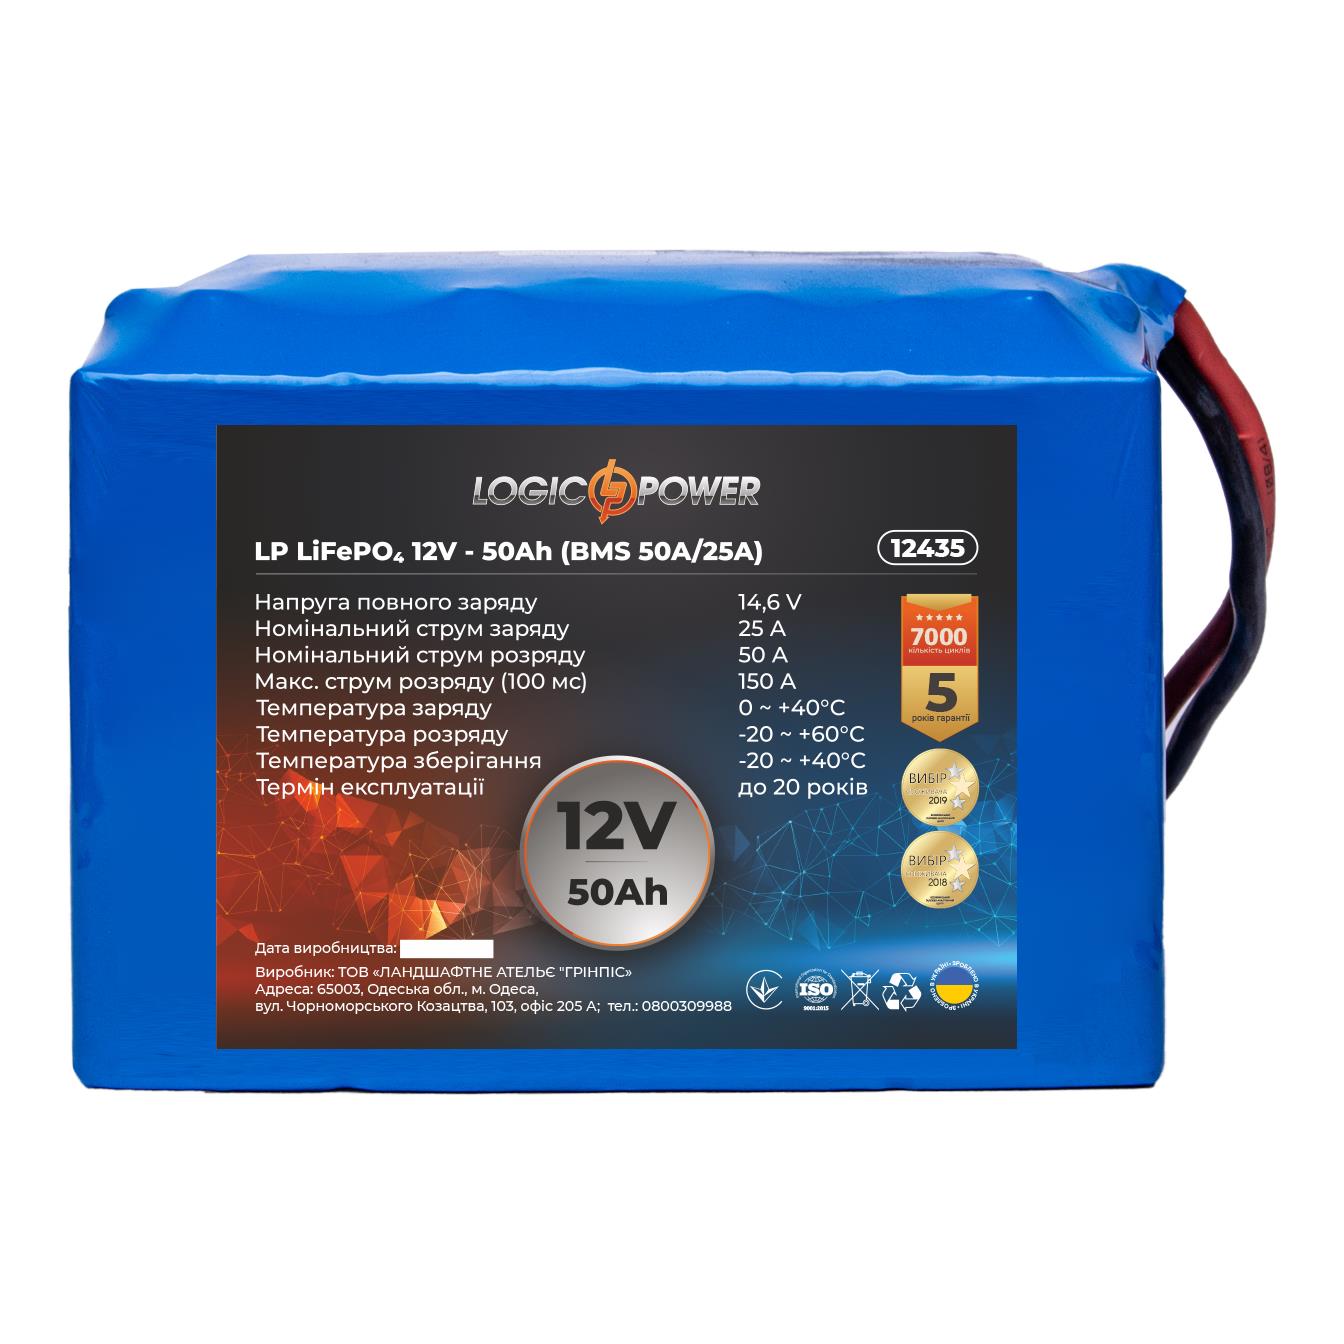 Аккумулятор литий-железо-фосфатный LogicPower LP LiFePO4 12V - 50 Ah (BMS 50A/25А) (12435) в интернет-магазине, главное фото